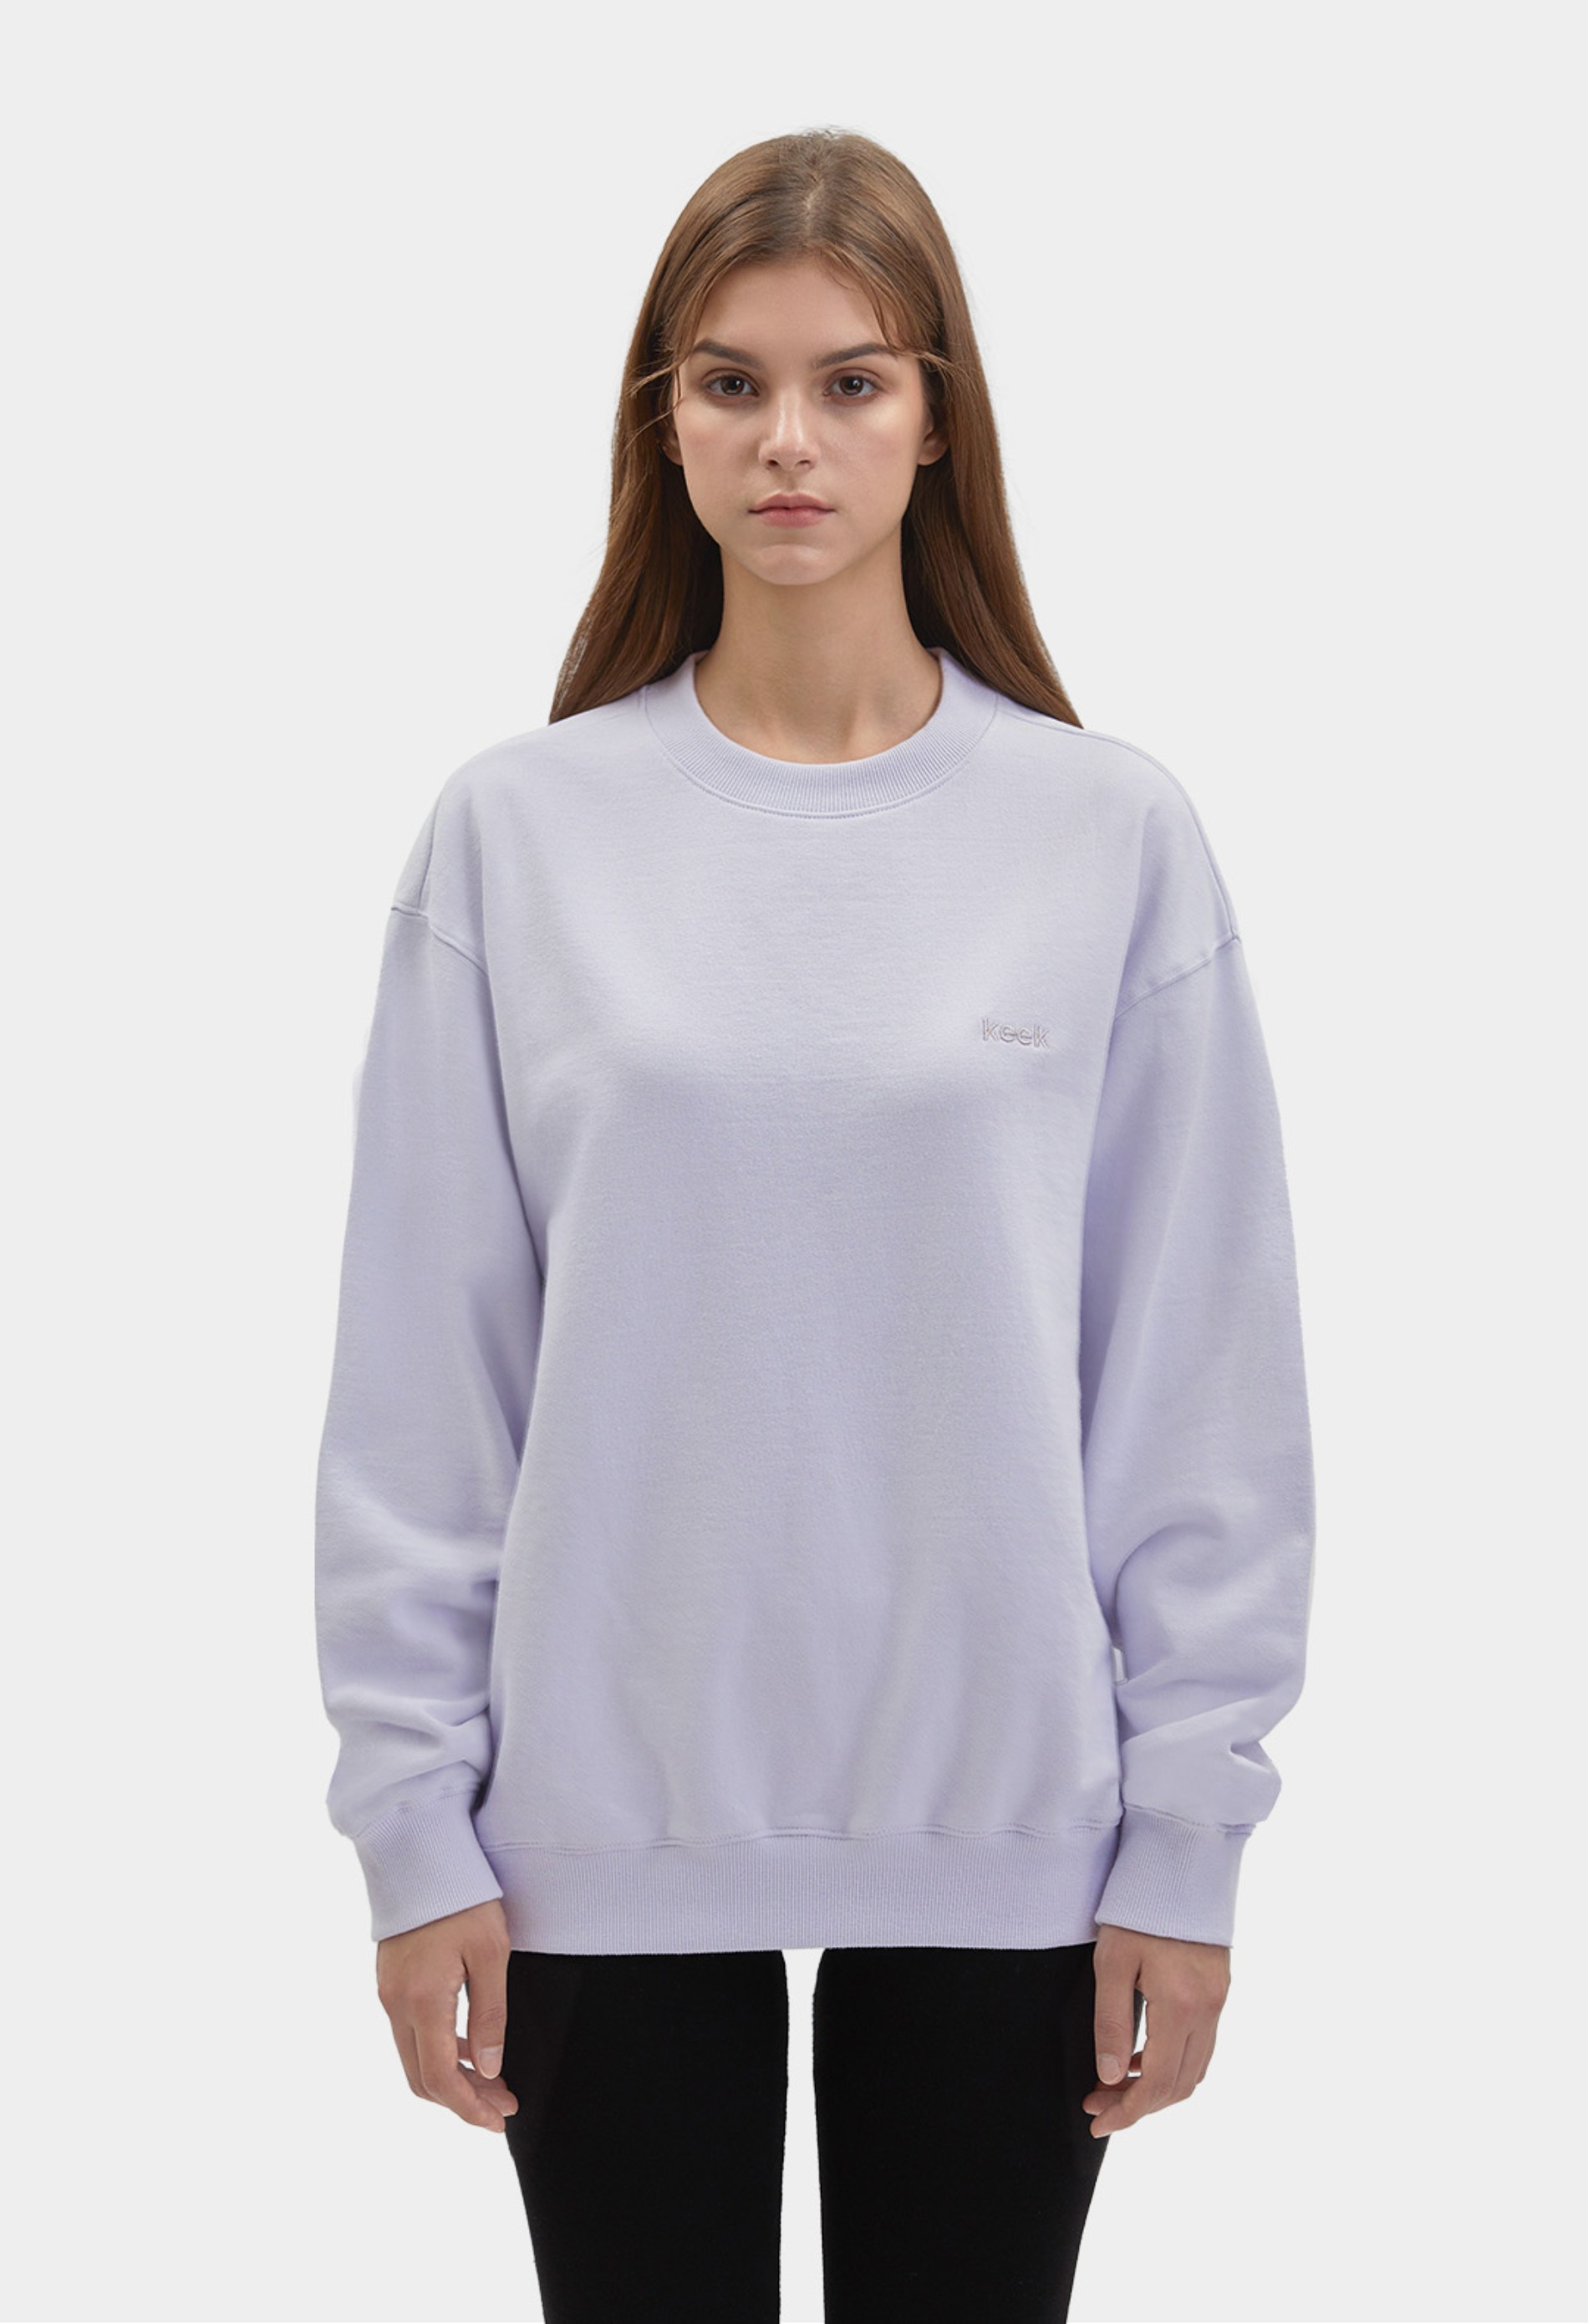 keek [Unisex] keek Sweatshirts - Light Purple 스트릿패션 유니섹스브랜드 커플시밀러룩 남자쇼핑몰 여성의류쇼핑몰 후드티 힙색